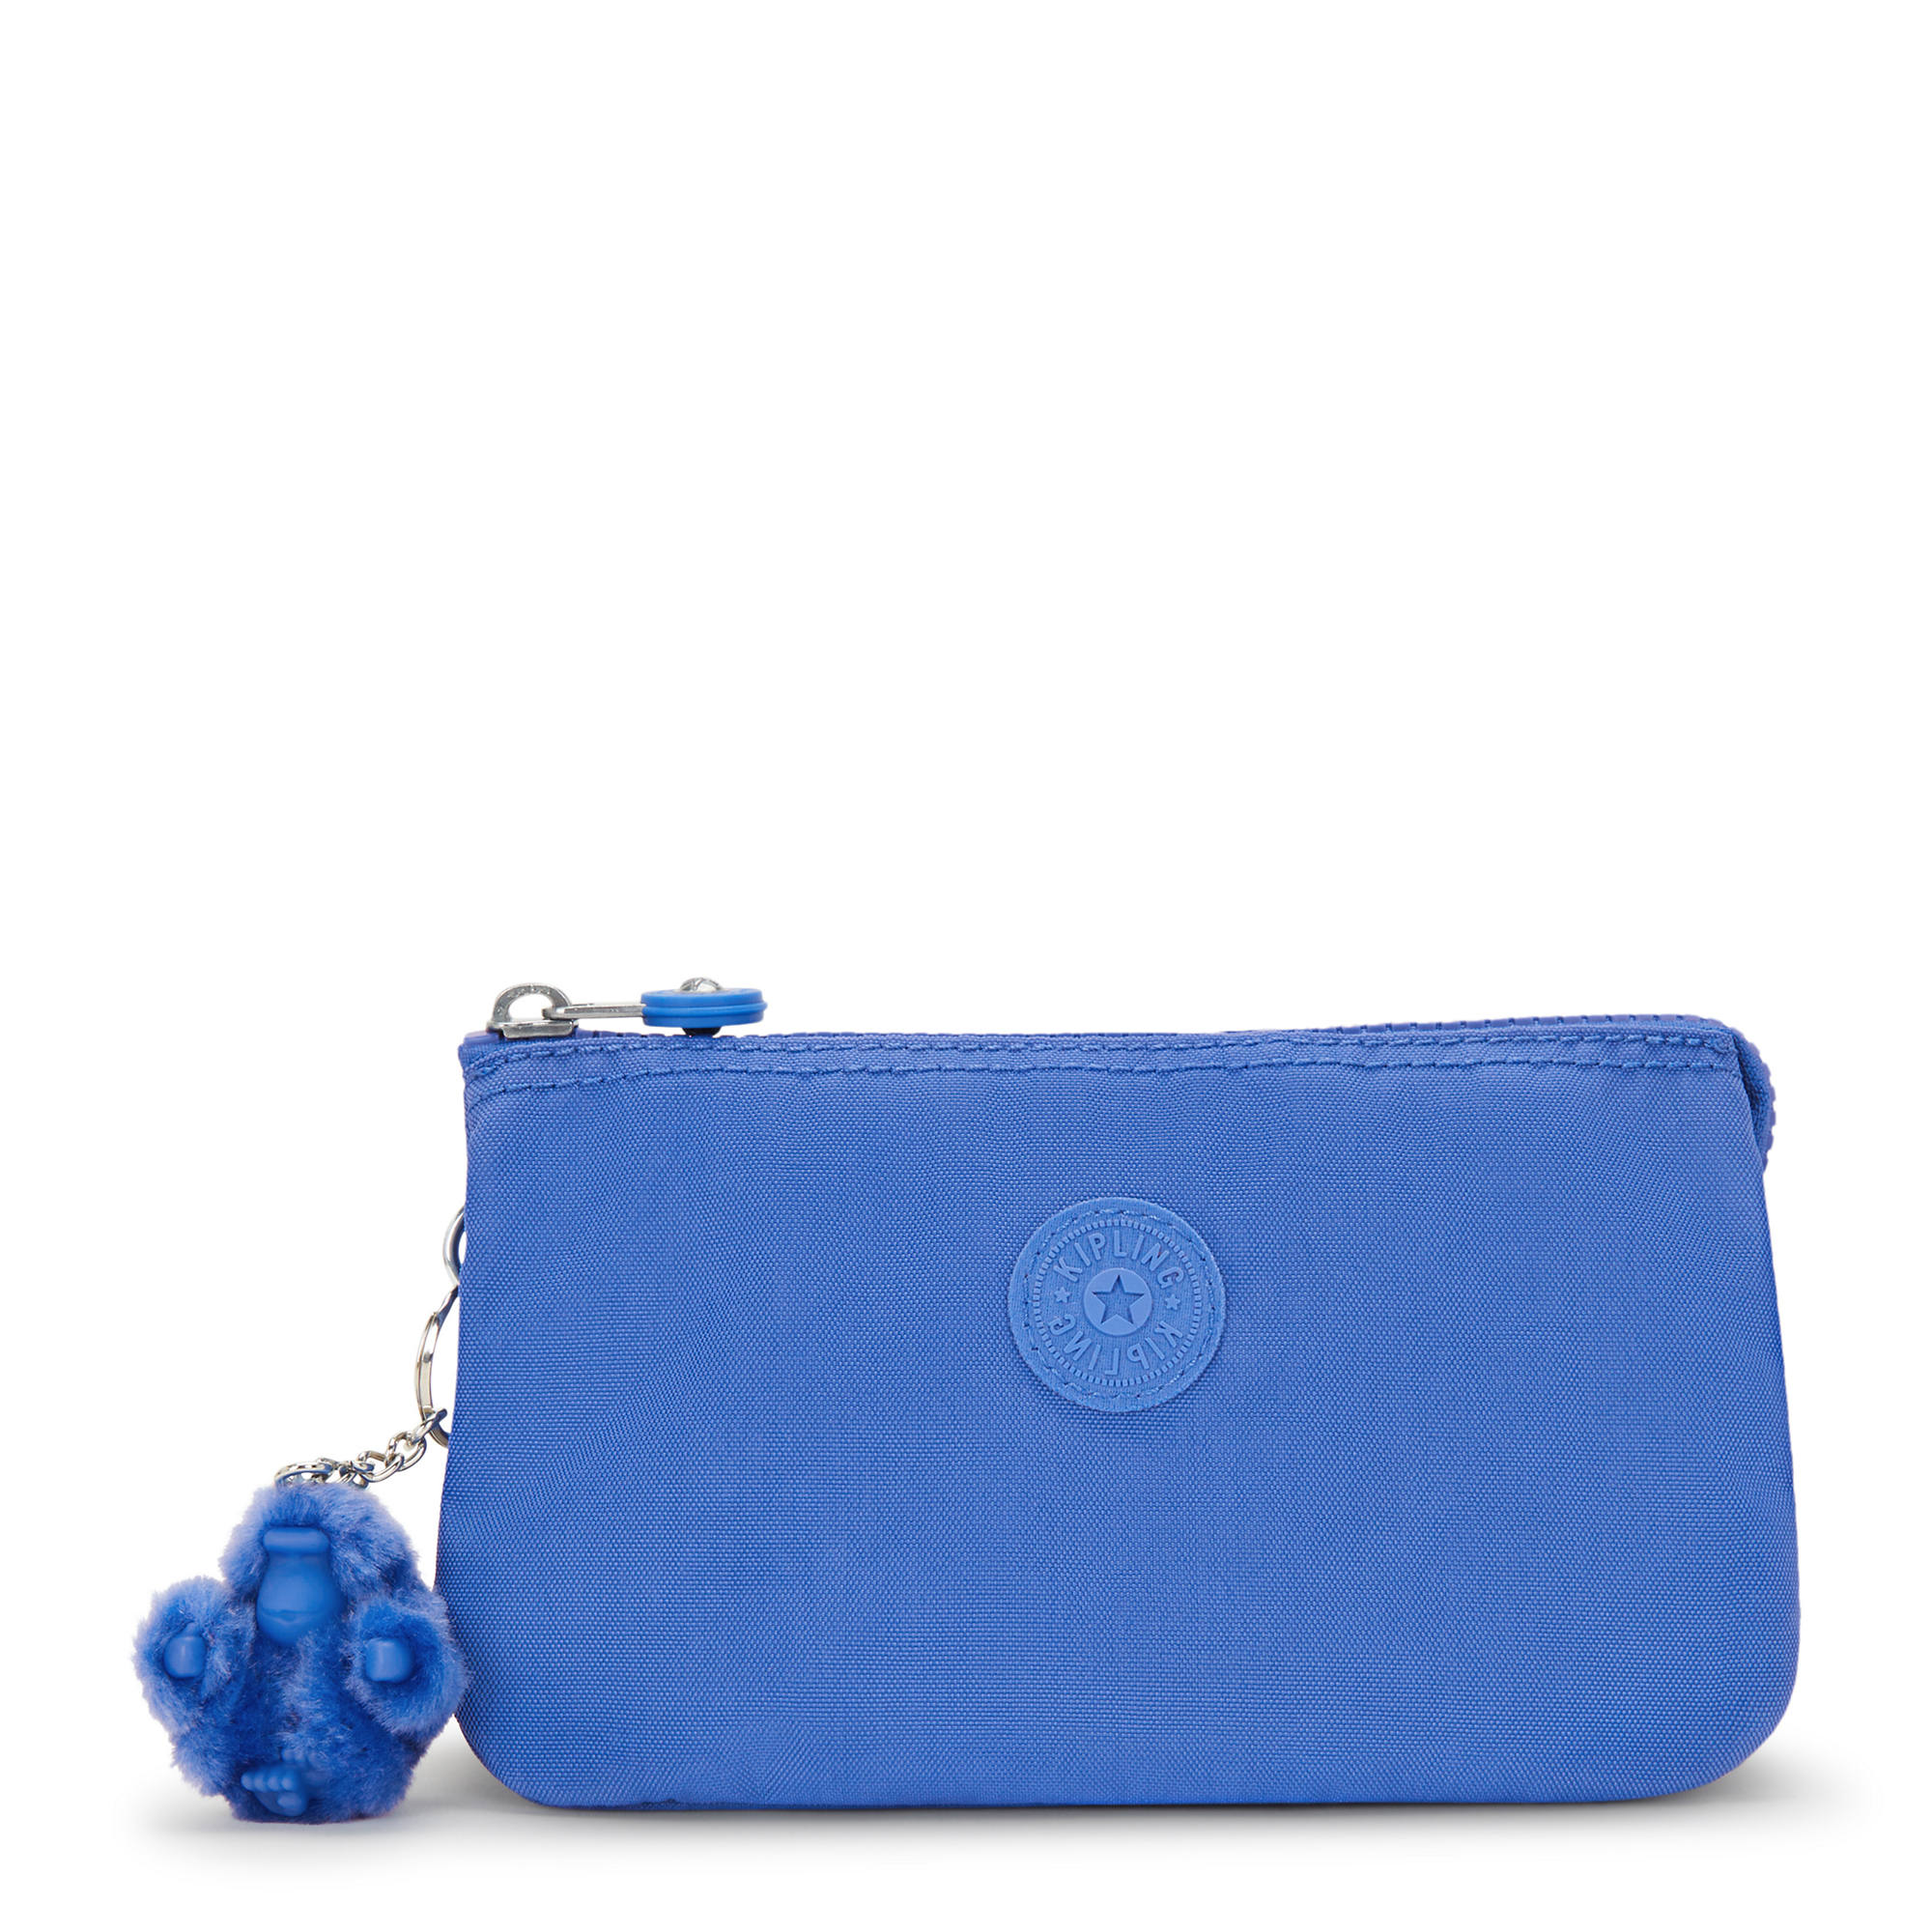 Kipling Abra Medium Purse/Wallet True Blue – Poshbags UK